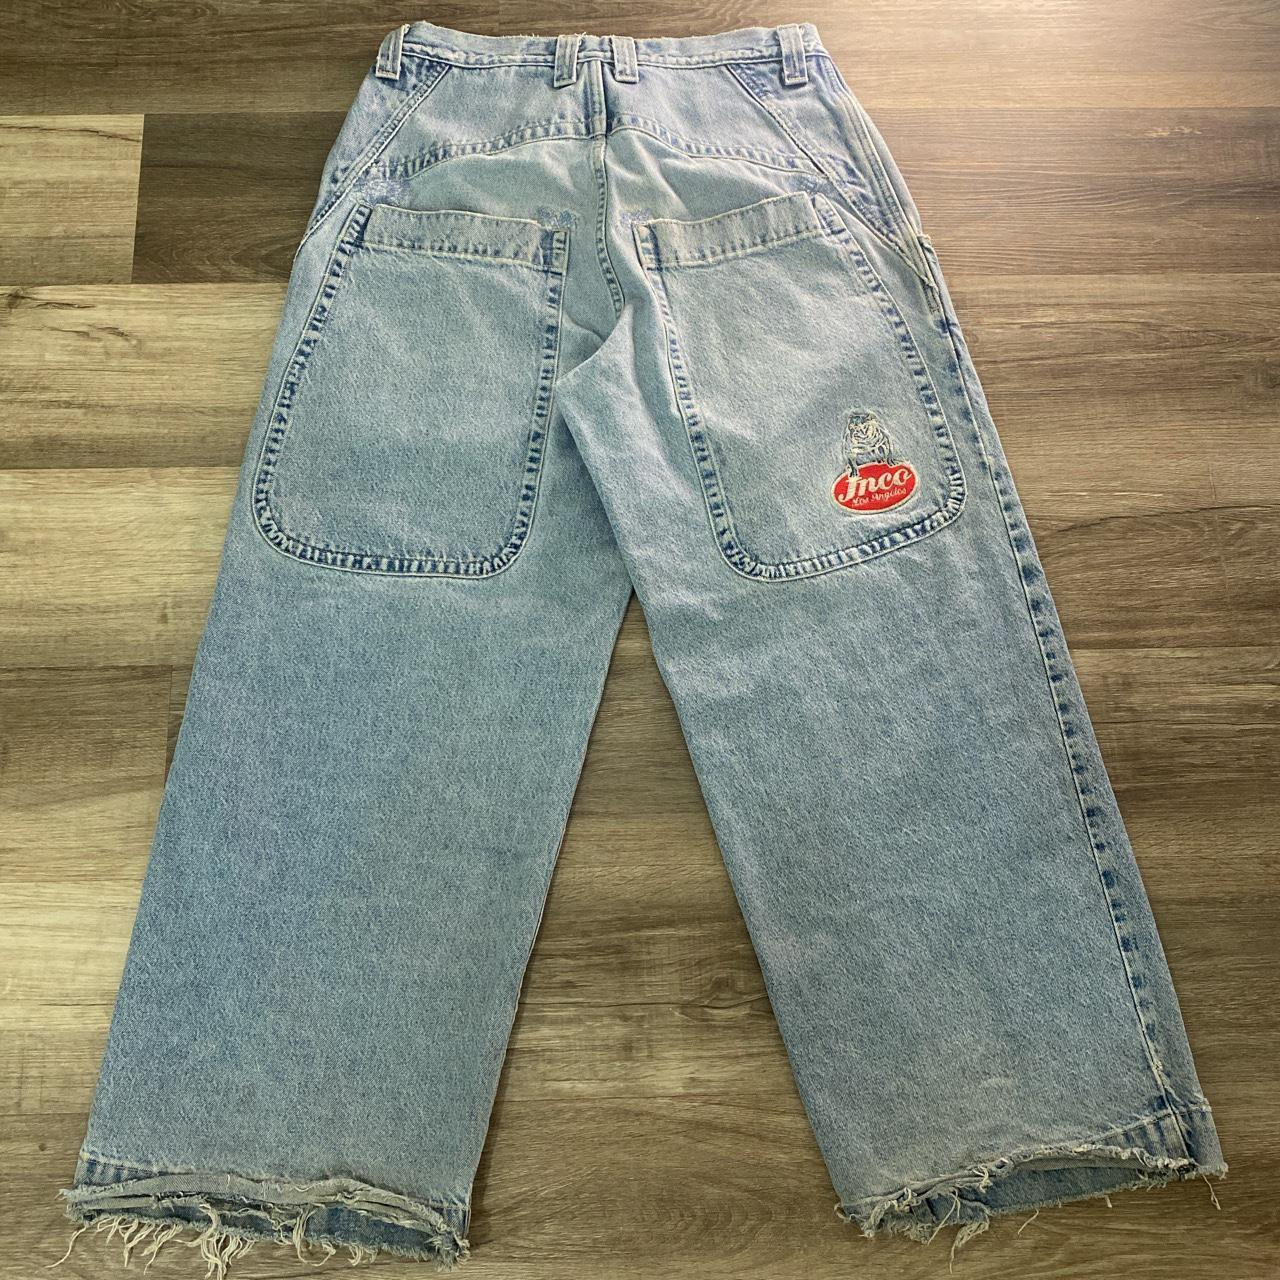 Vintage Jnco Jeans Big Rigs 90s OG Baggy Skater Y2k... - Depop